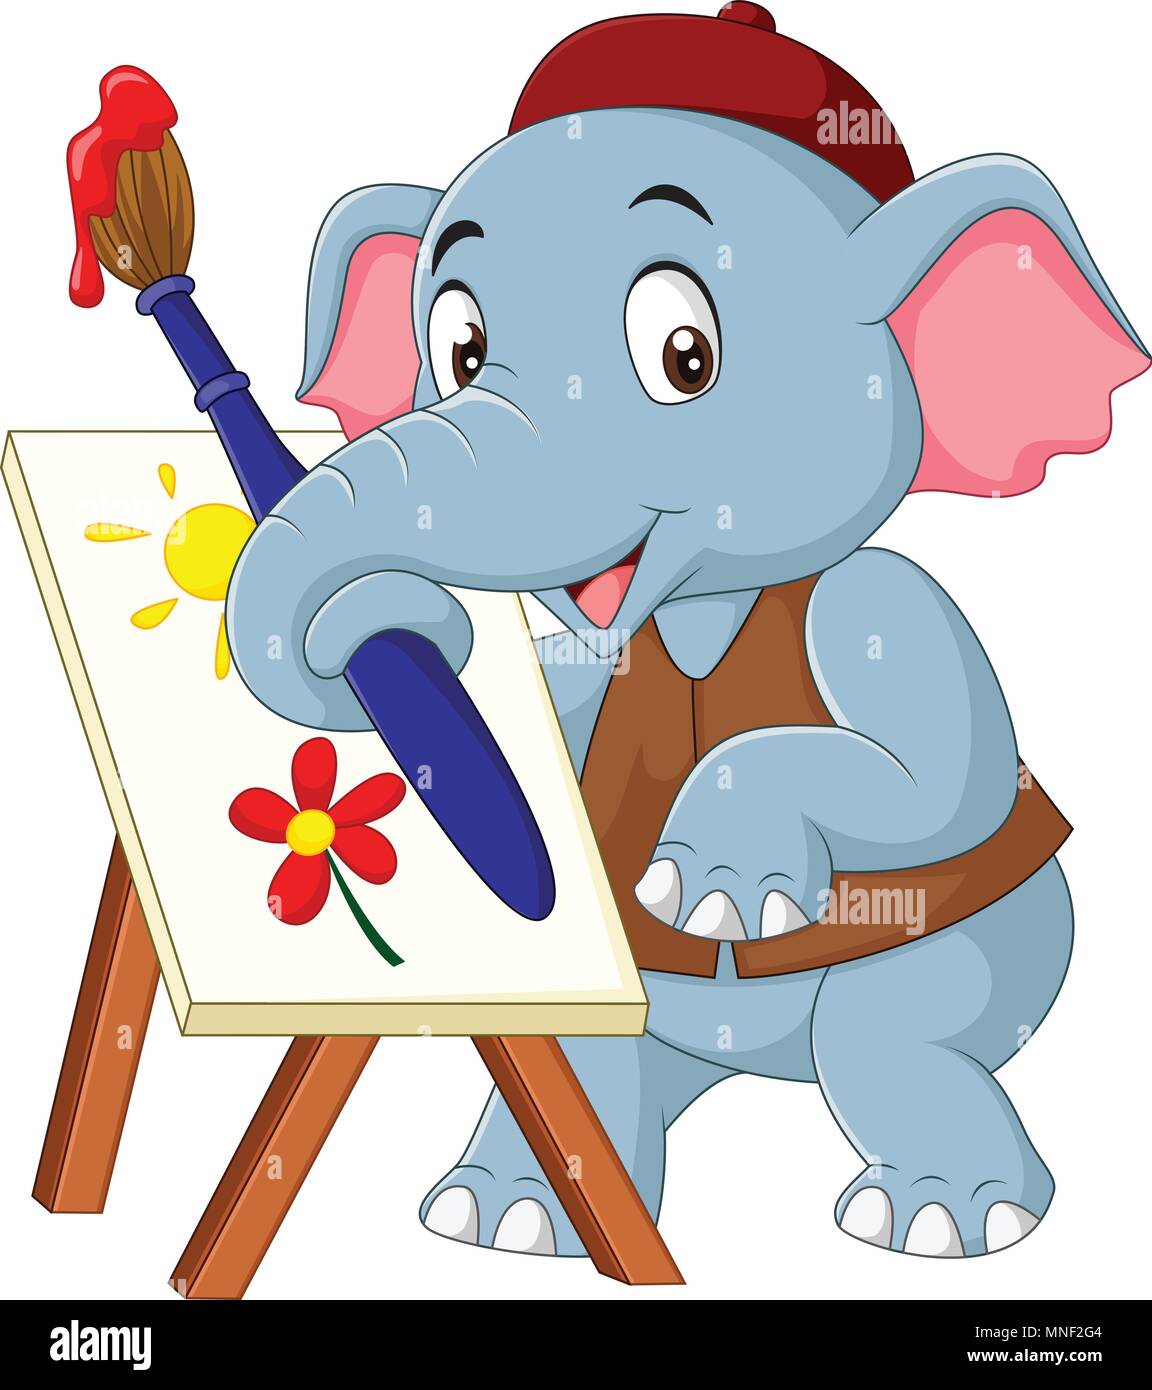 Cute Cartoon dessin de l'éléphant d'une photo Illustration de Vecteur